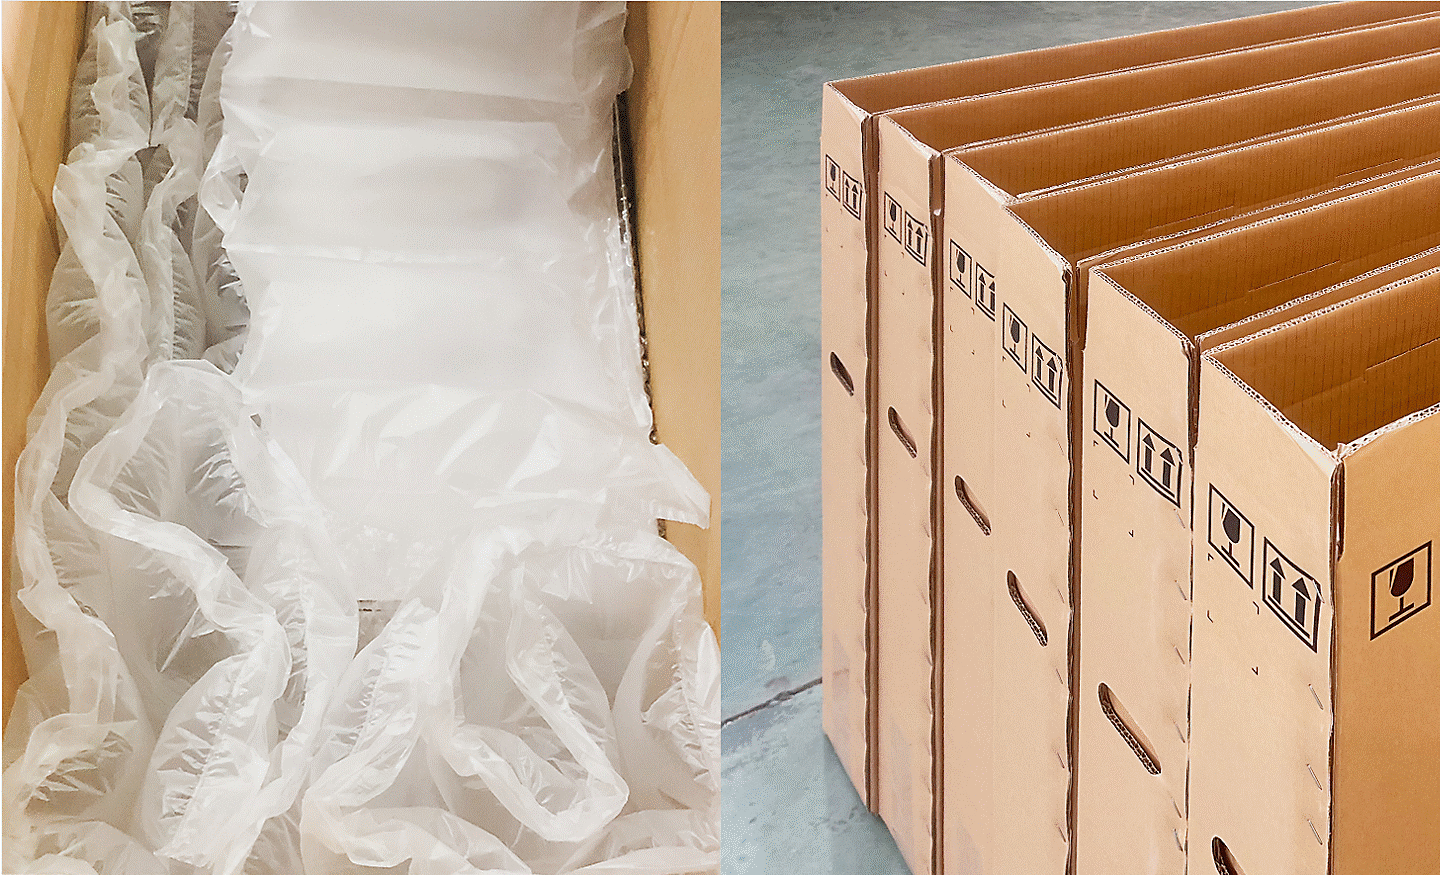 Imagini materiale secundare reutilizate în producție: pernițe de amortizare (stânga) și ambalaje de carton (dreapta)